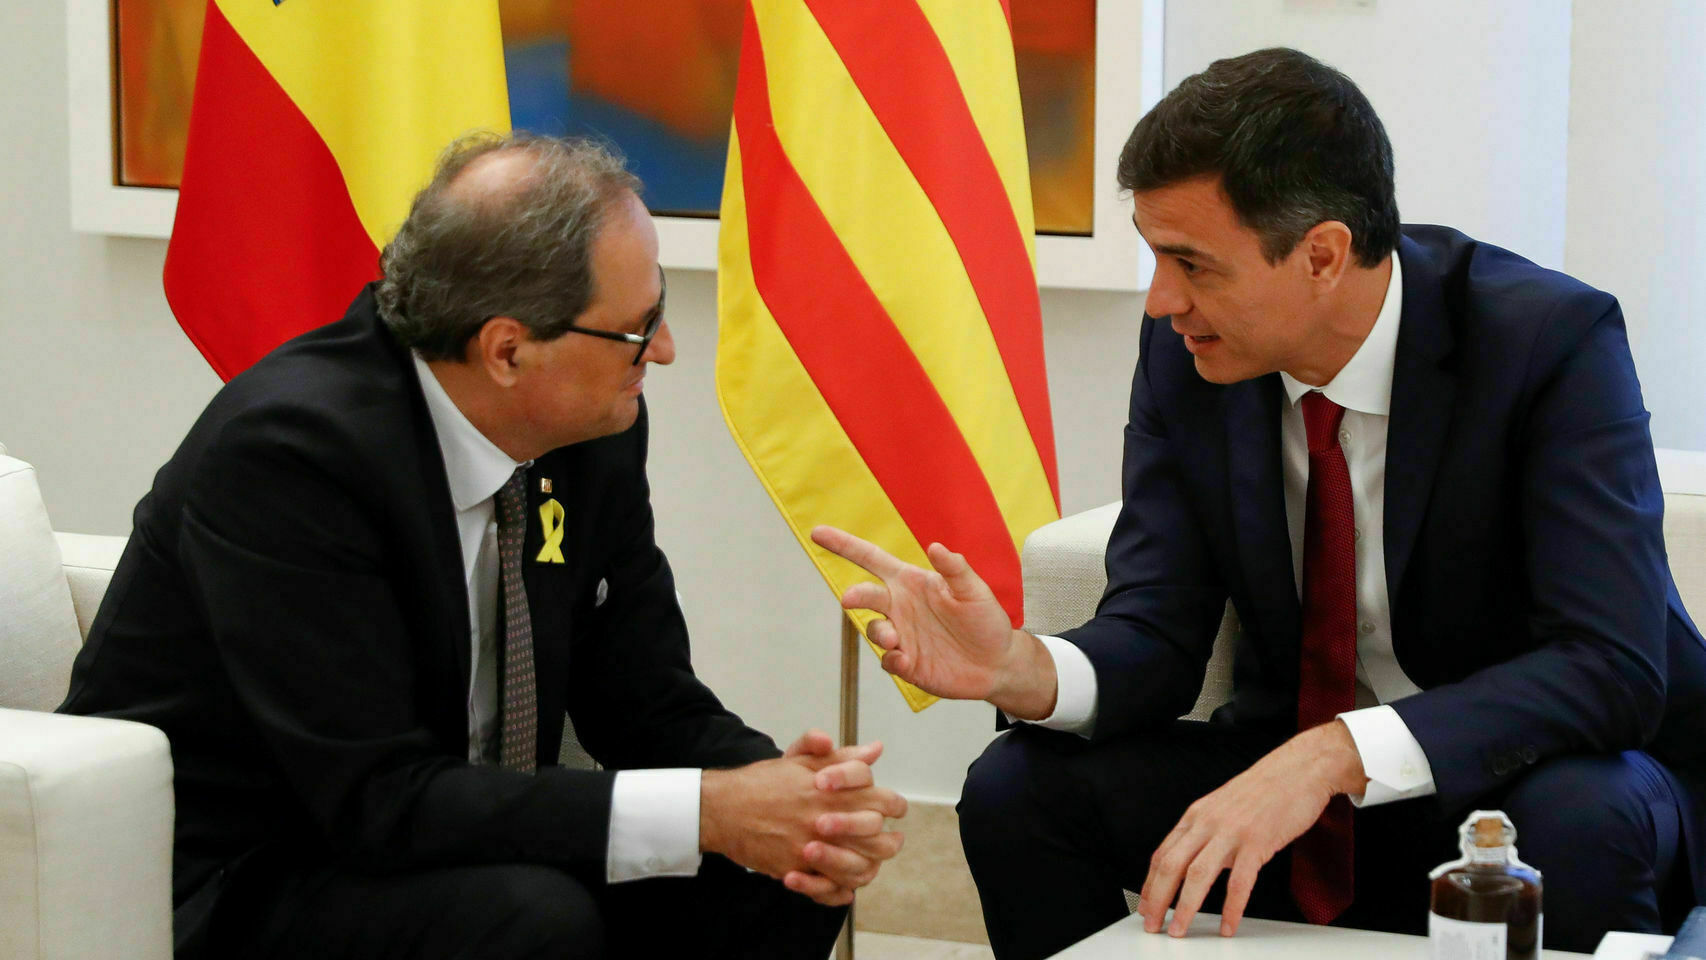 Sánchez podría no necesitar al separatismo catalán según los últimos sondeos